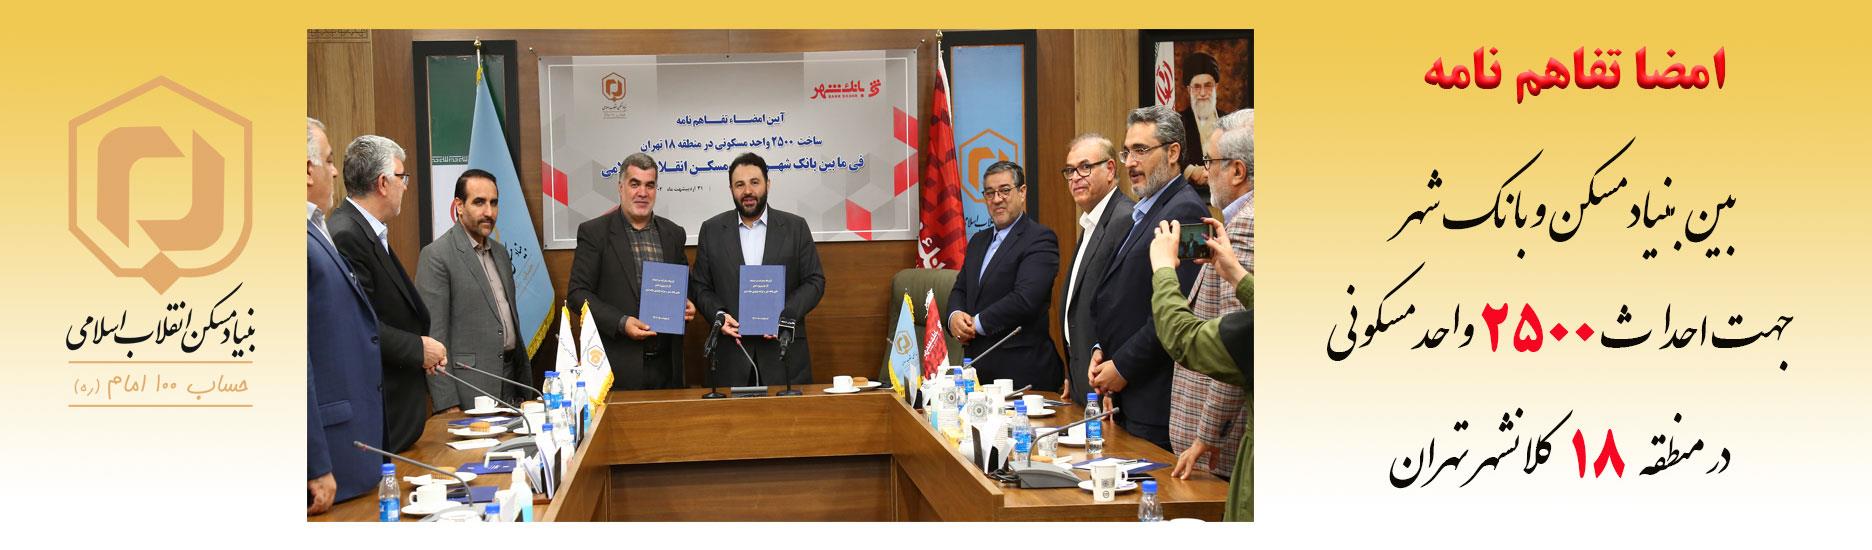 امضا تفاهم نامه بین بنیاد مسکن و بانک شهر  جهت احداث  2500 واحد مسکونی  در منطقه 18 کلانشهر تهران